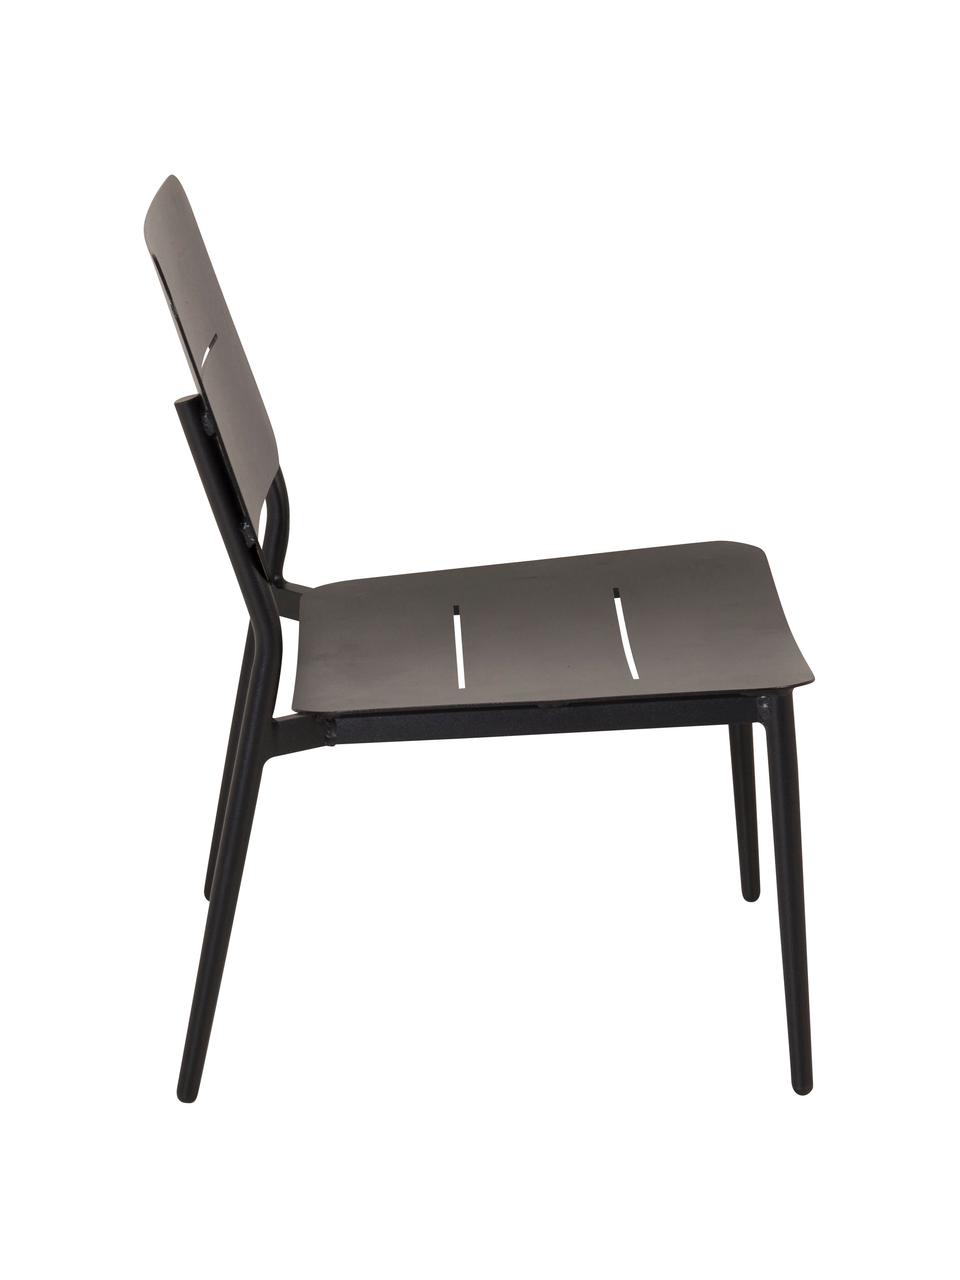 Fotel wypoczynkowy Lina, Metal lakierowany, Czarny, S 55 x G 59 cm